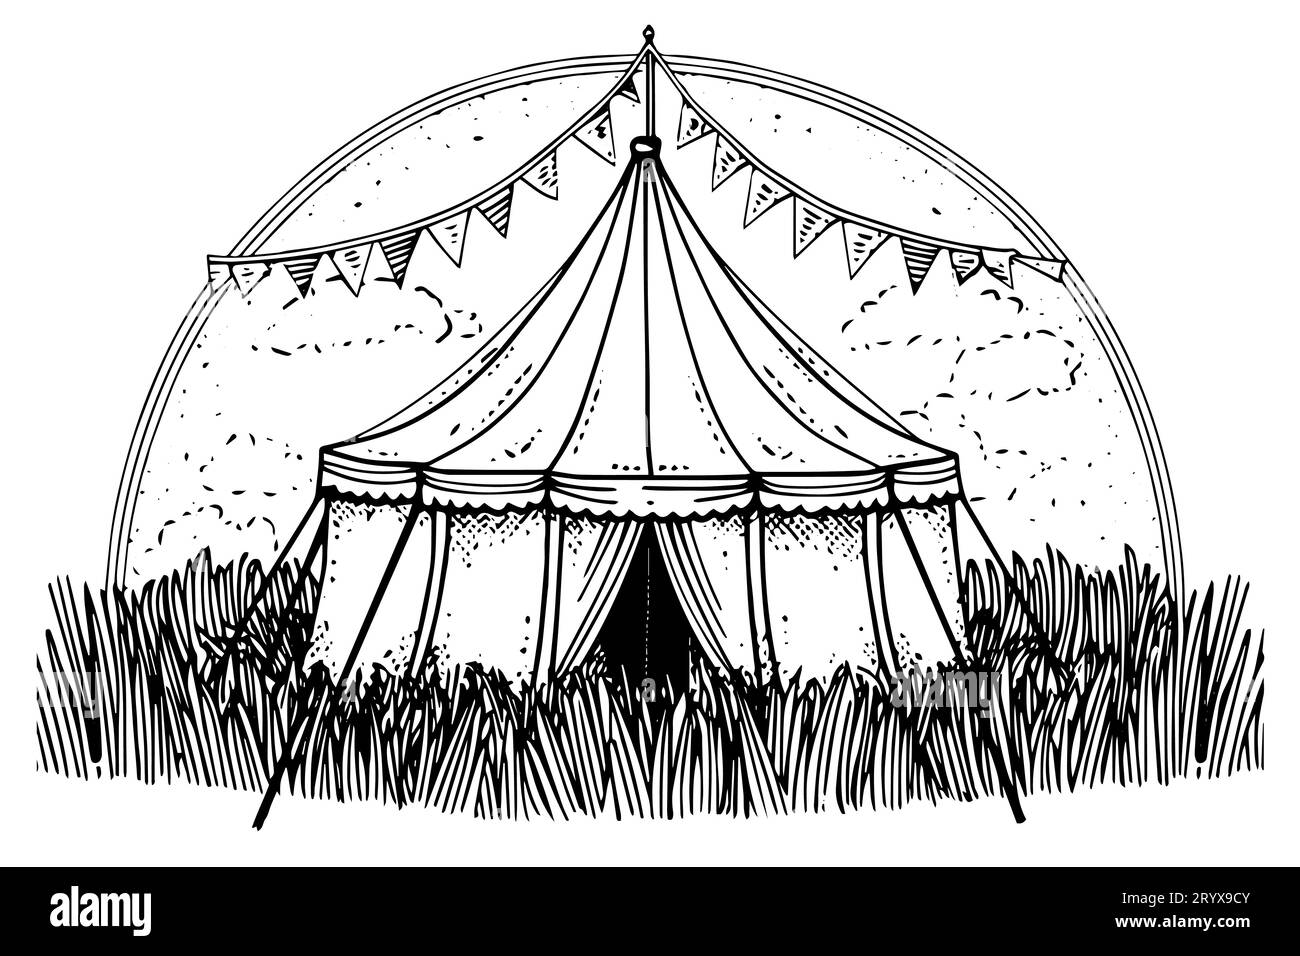 Tente de marquise de cirque rétro avec drapeau dessiné à la main dessin à l'encre. Illustration vectorielle de style de gravure. Illustration de Vecteur